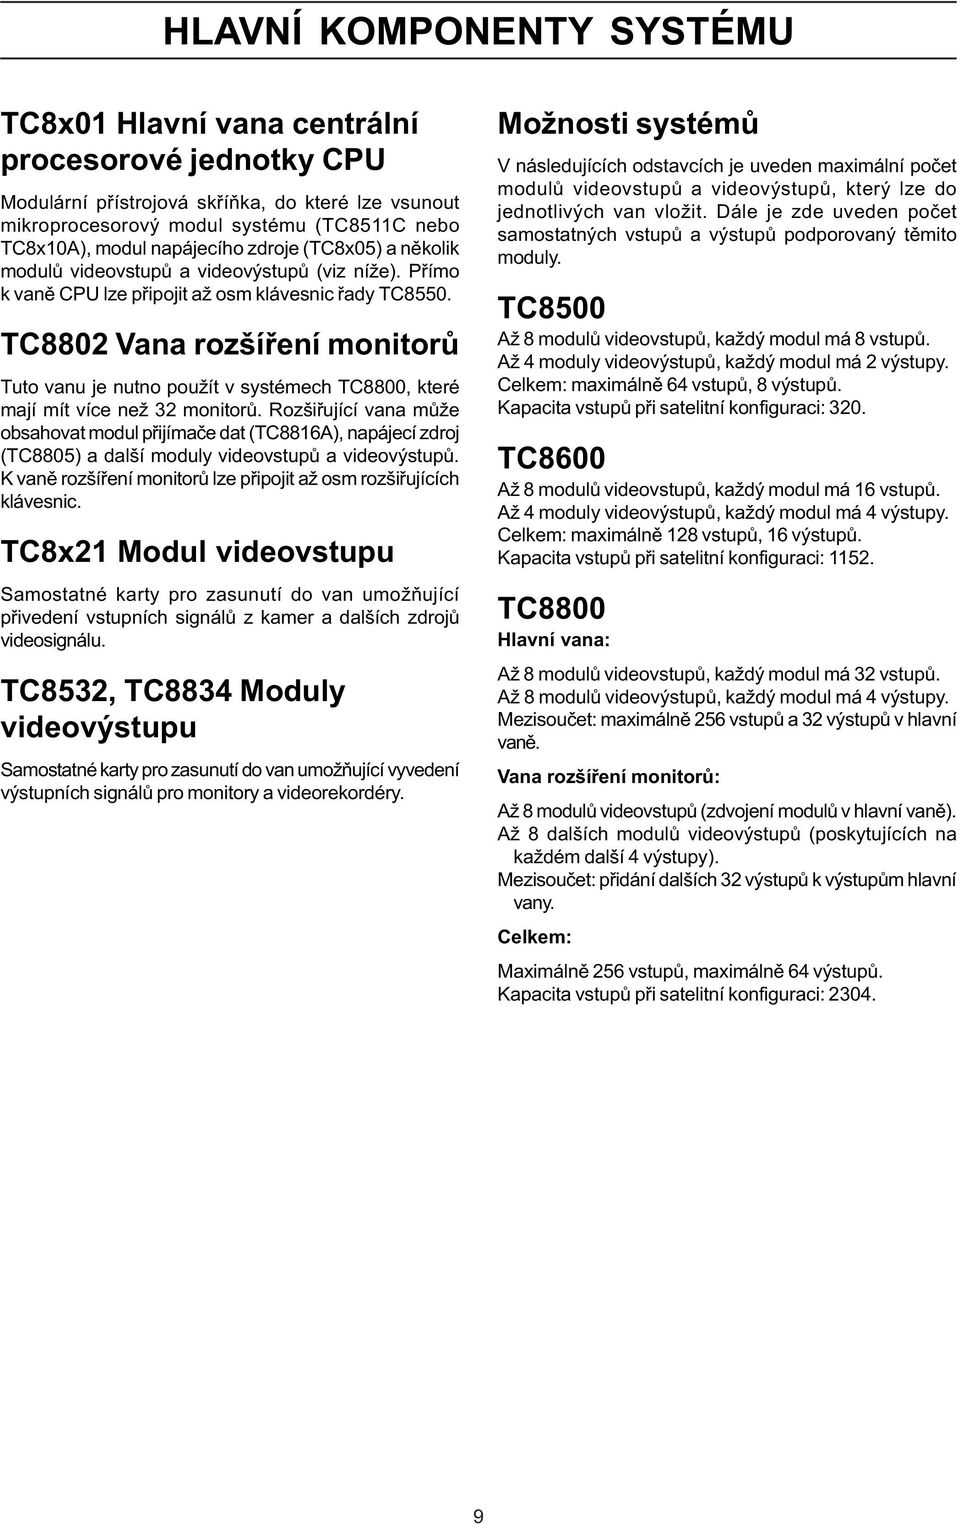 TC8802 Vana rozšíøení monitorù Tuto vanu je nutno použít v systémech TC8800, které mají mít více než 32 monitorù.